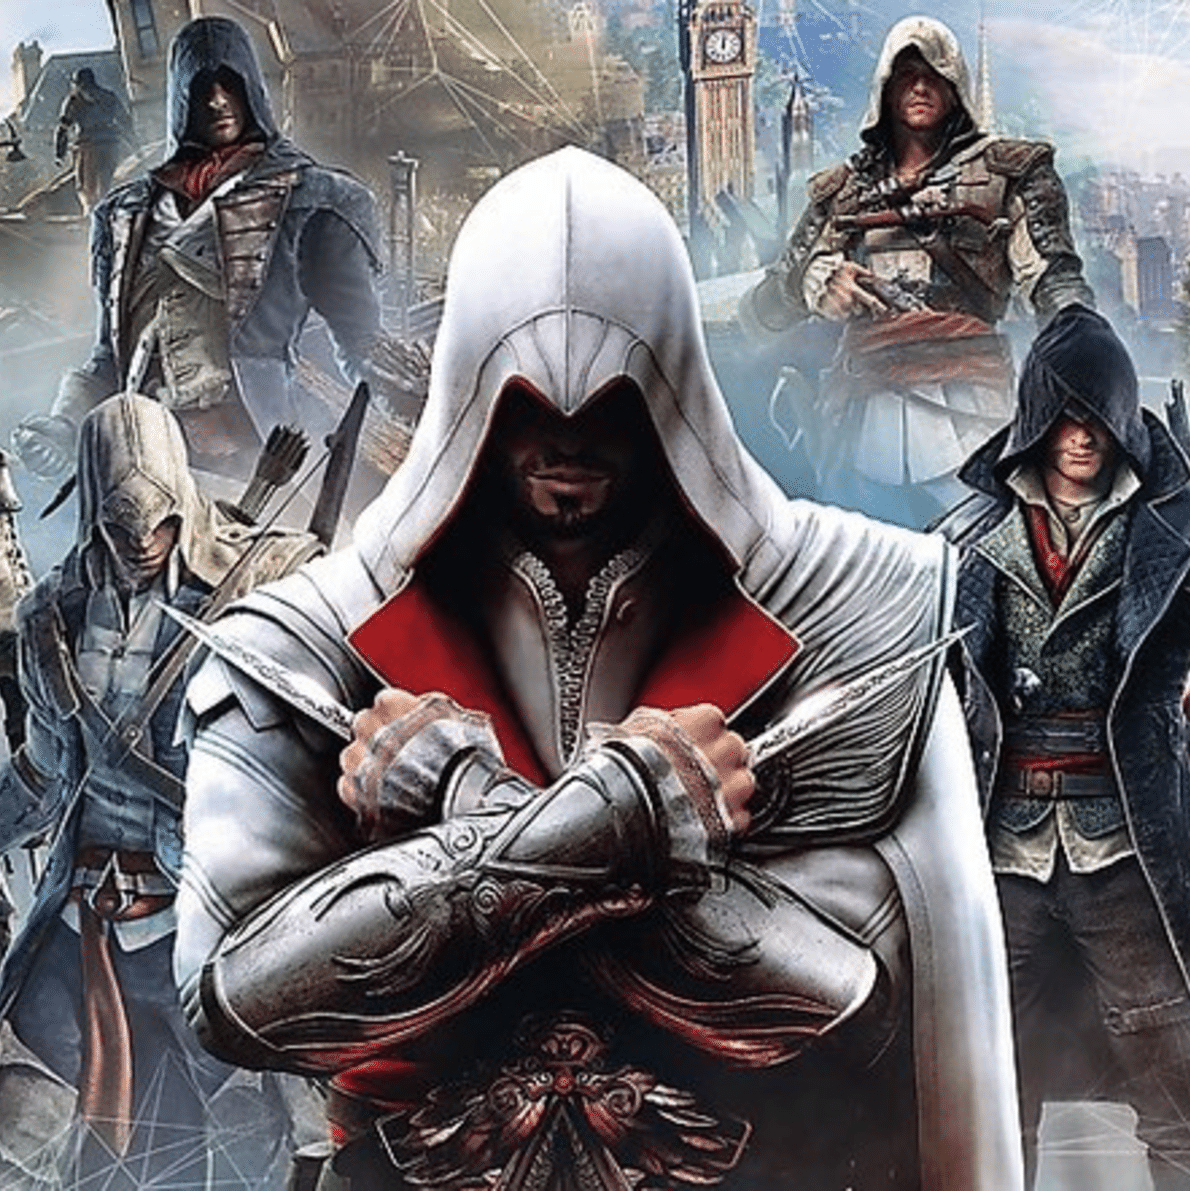 Free Fire: truque permite abrir porta da Torre Assassin's Creed